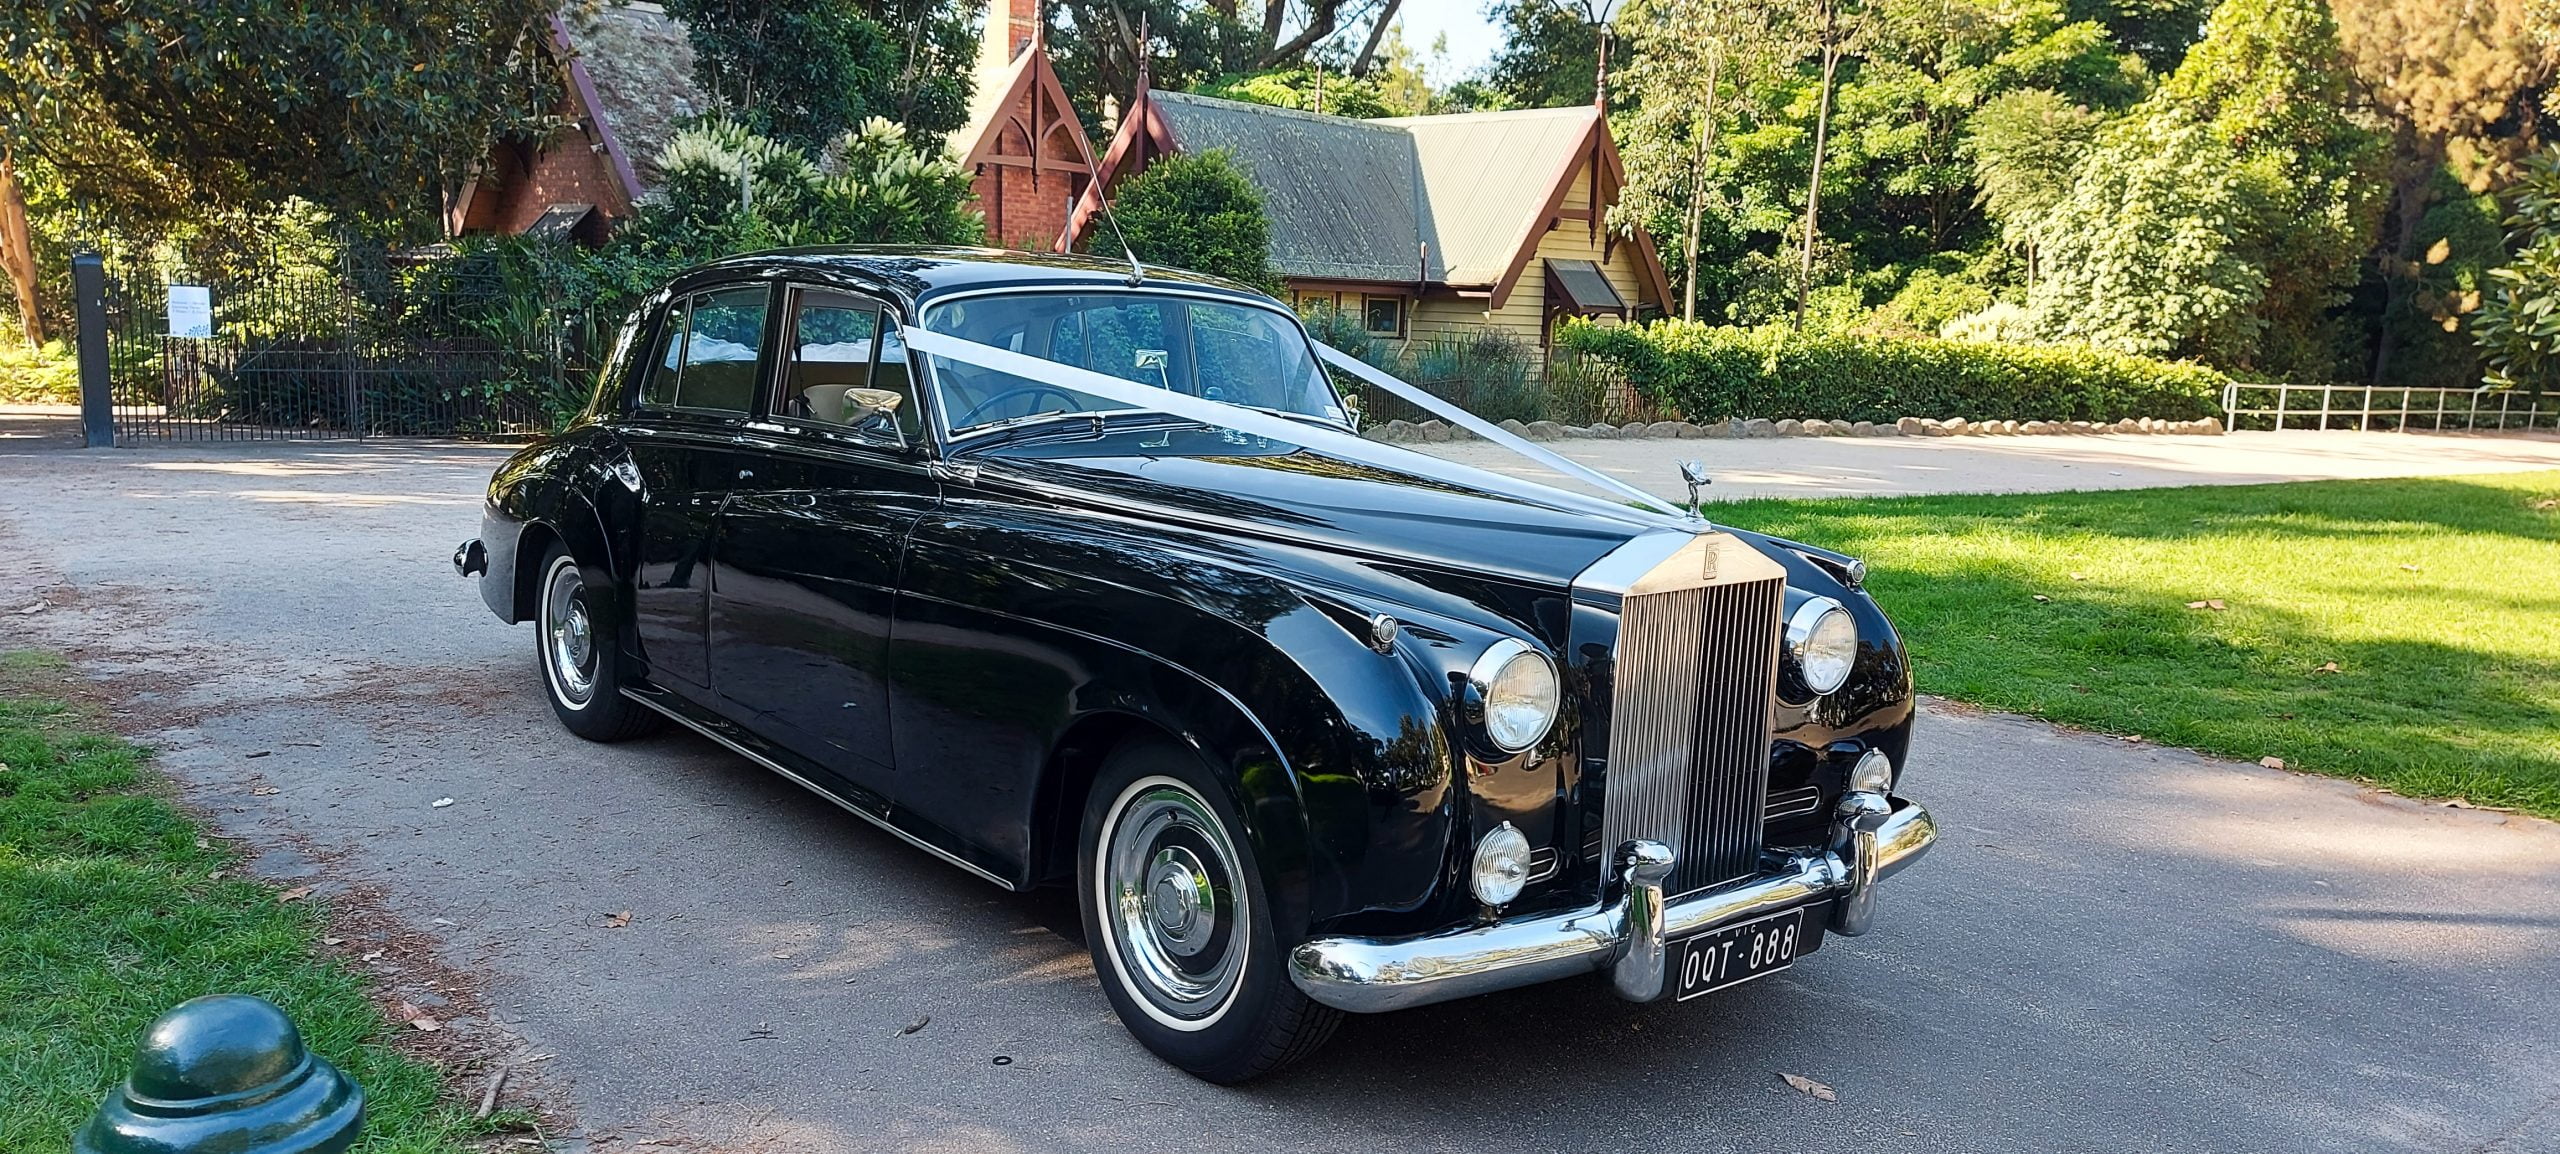 1960 Rolls Royce Cloud